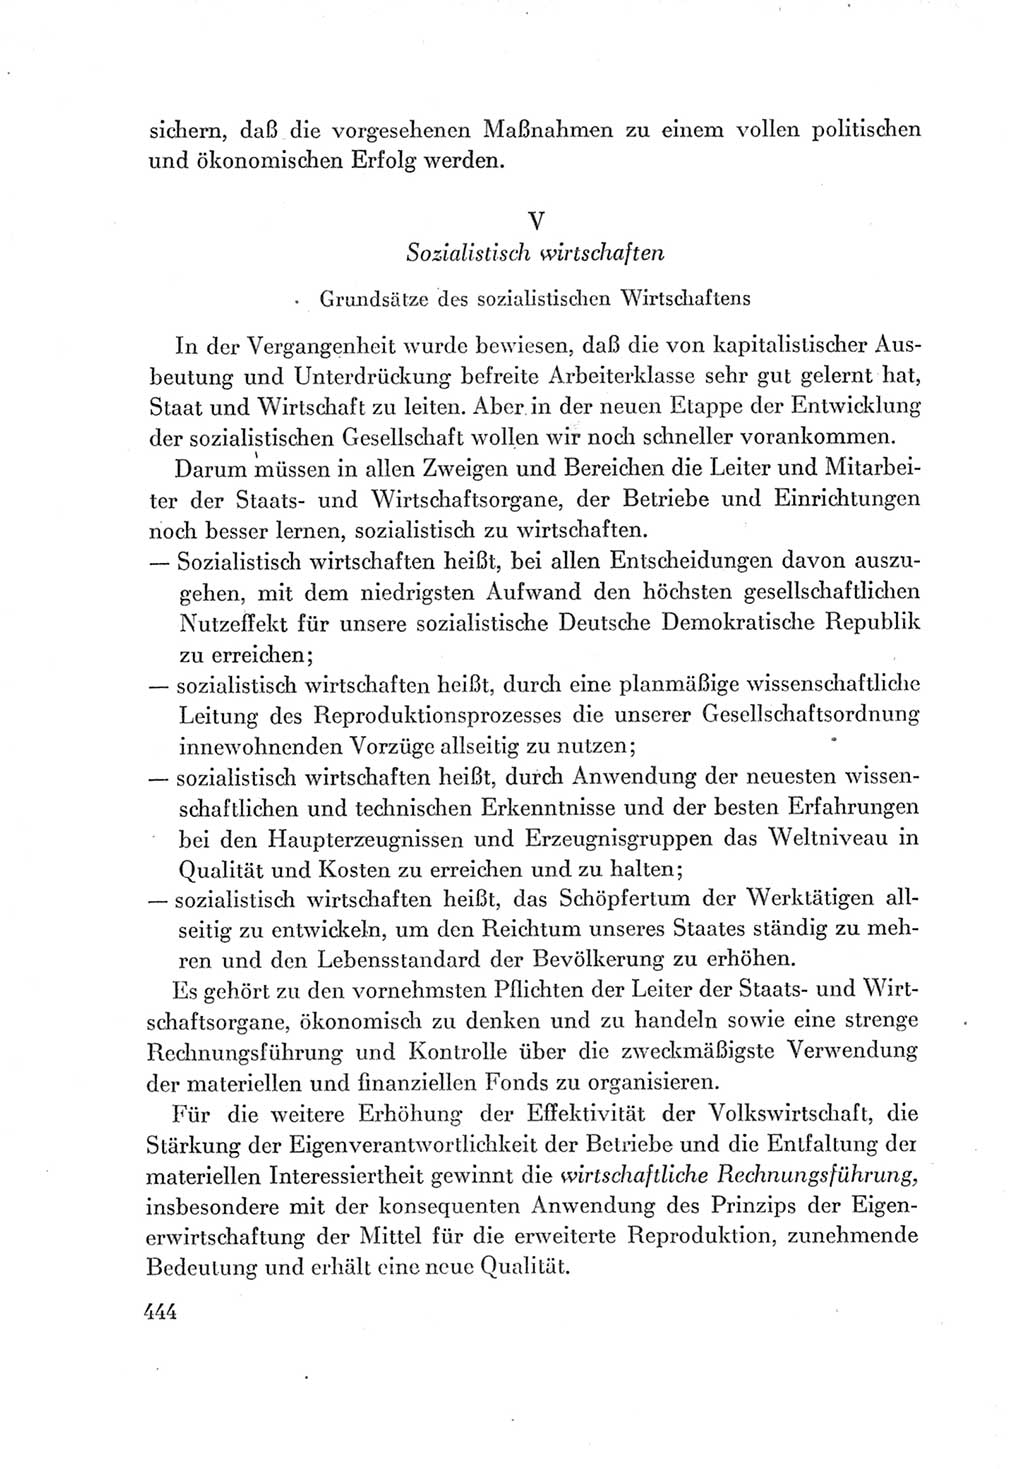 Protokoll der Verhandlungen des Ⅶ. Parteitages der Sozialistischen Einheitspartei Deutschlands (SED) [Deutsche Demokratische Republik (DDR)] 1967, Band Ⅰ, Seite 444 (Prot. Verh. Ⅶ. PT SED DDR 1967, Bd. Ⅰ, S. 444)